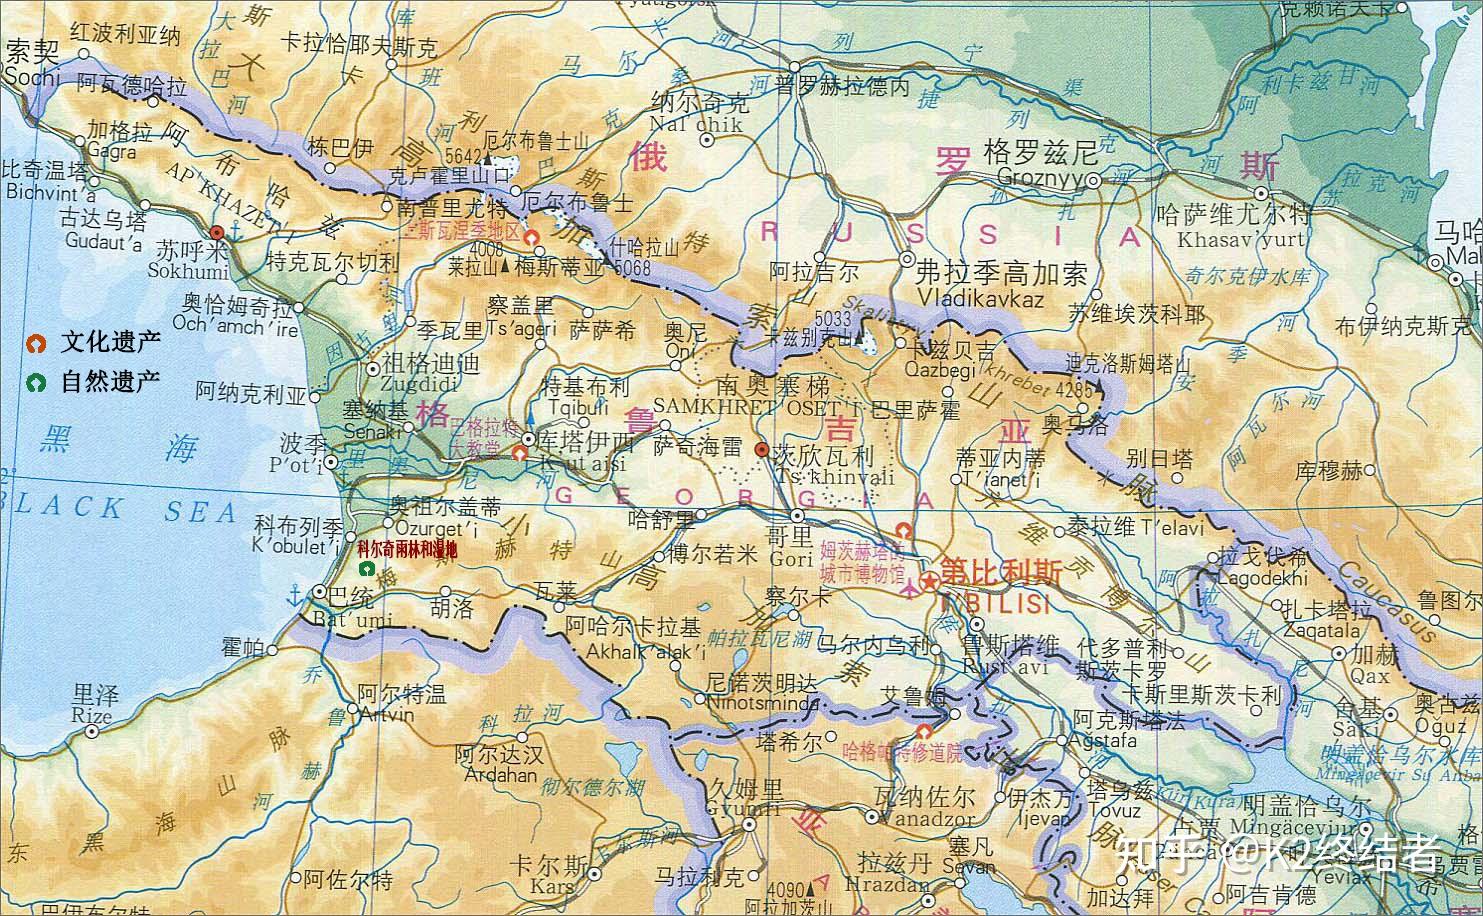 高加索行政区划图片